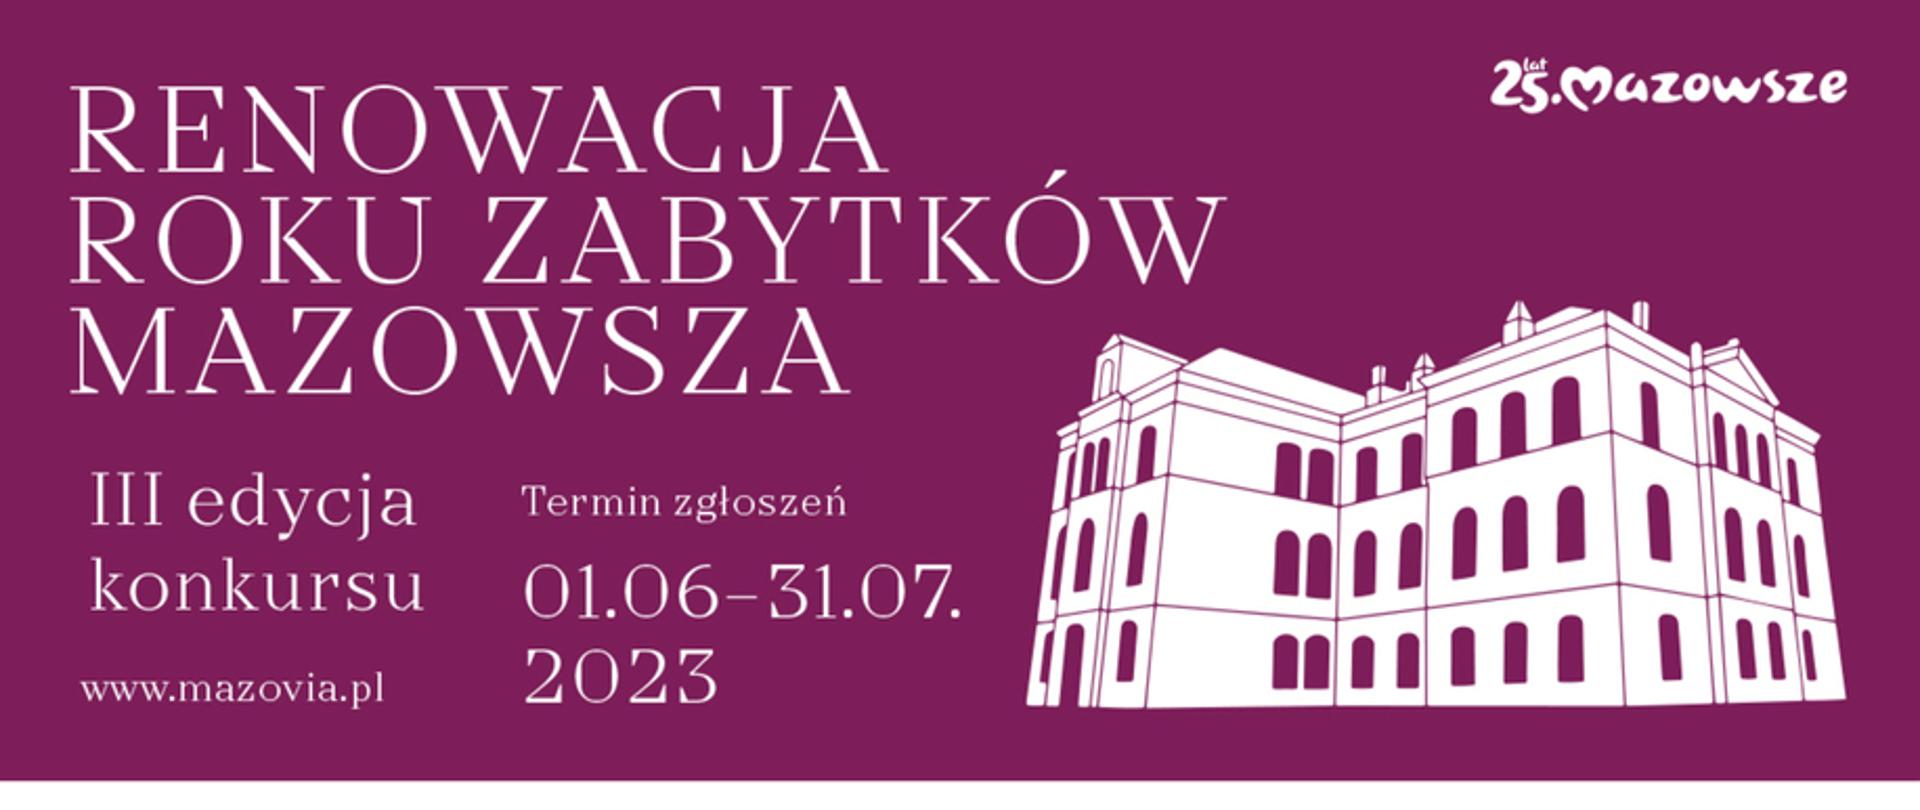 Banner promujący konkurs Renowacja roku zabytków Mazowsza 